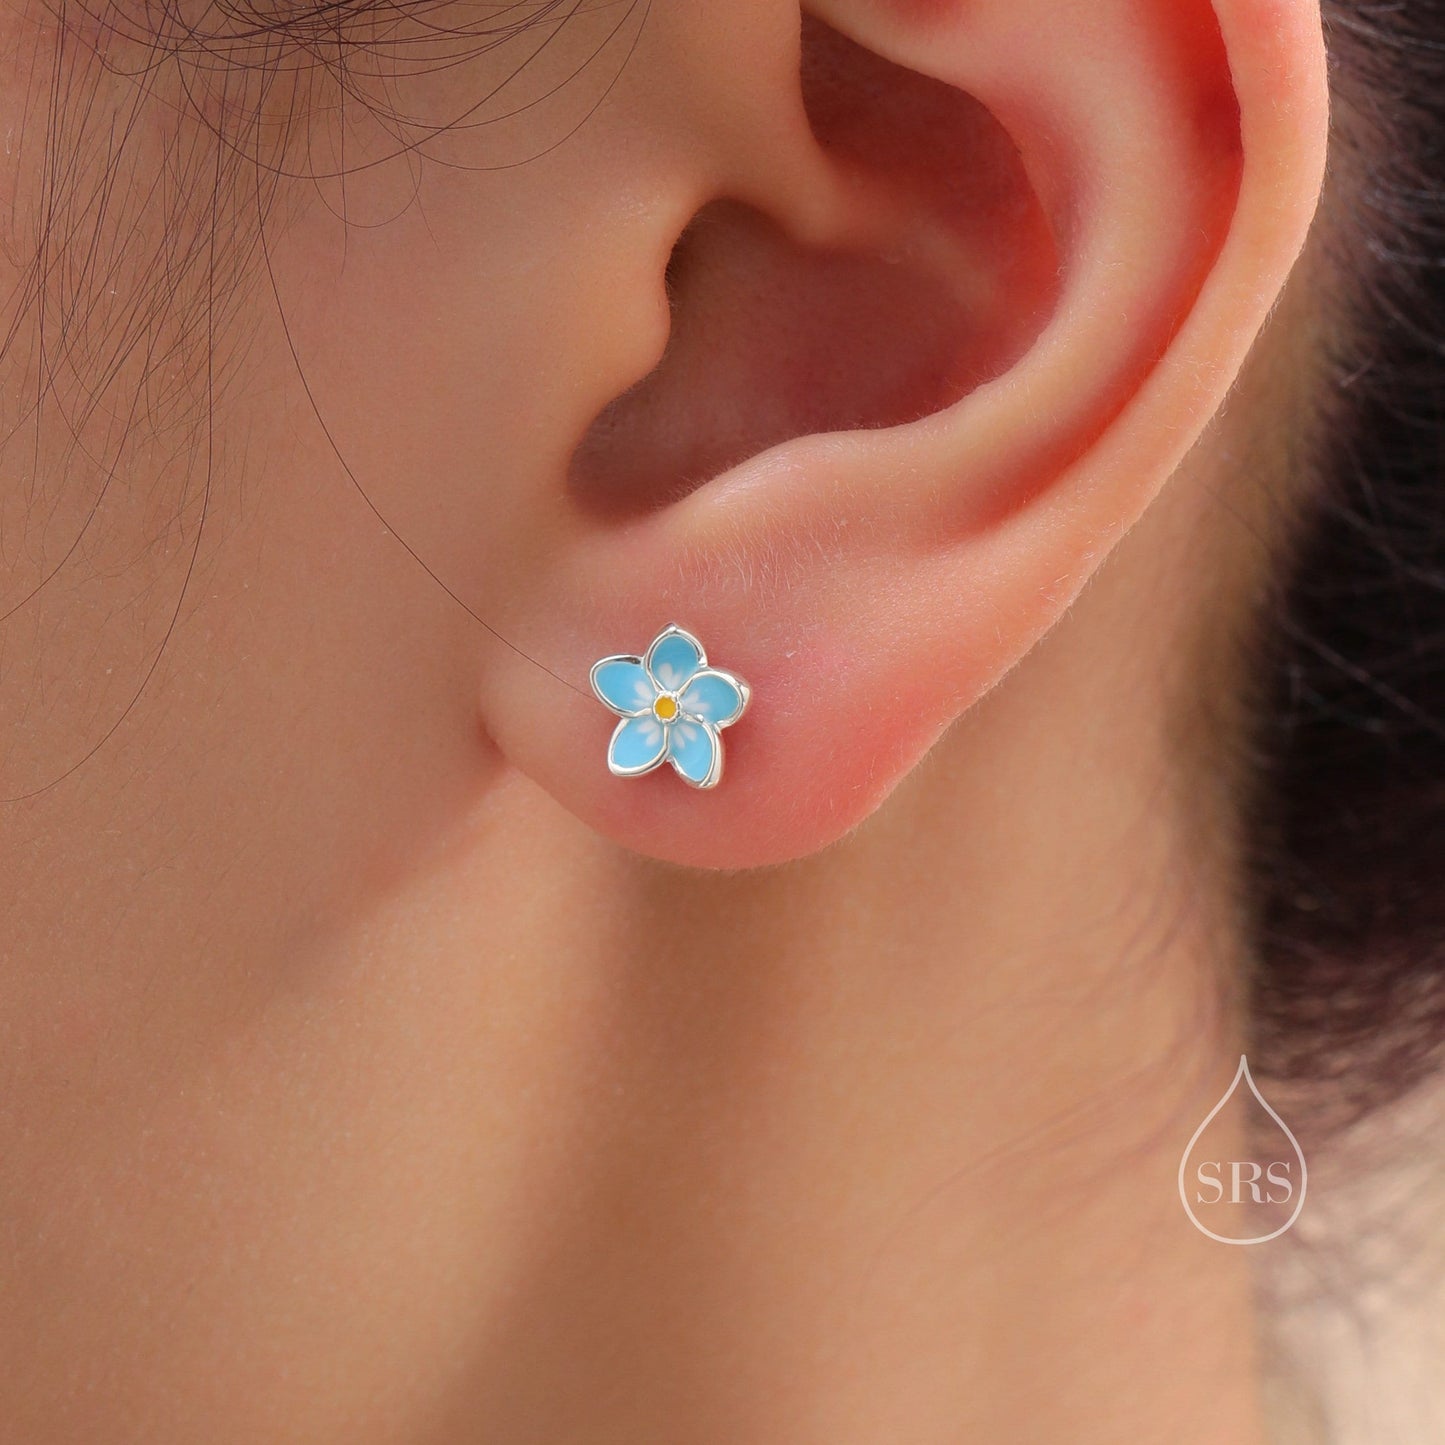 Dainty Forget-me-not Enamel Stud Earrings in Sterling Silver,  Flower Earrings, Blue Blossom Earrings, Forget me not earrings